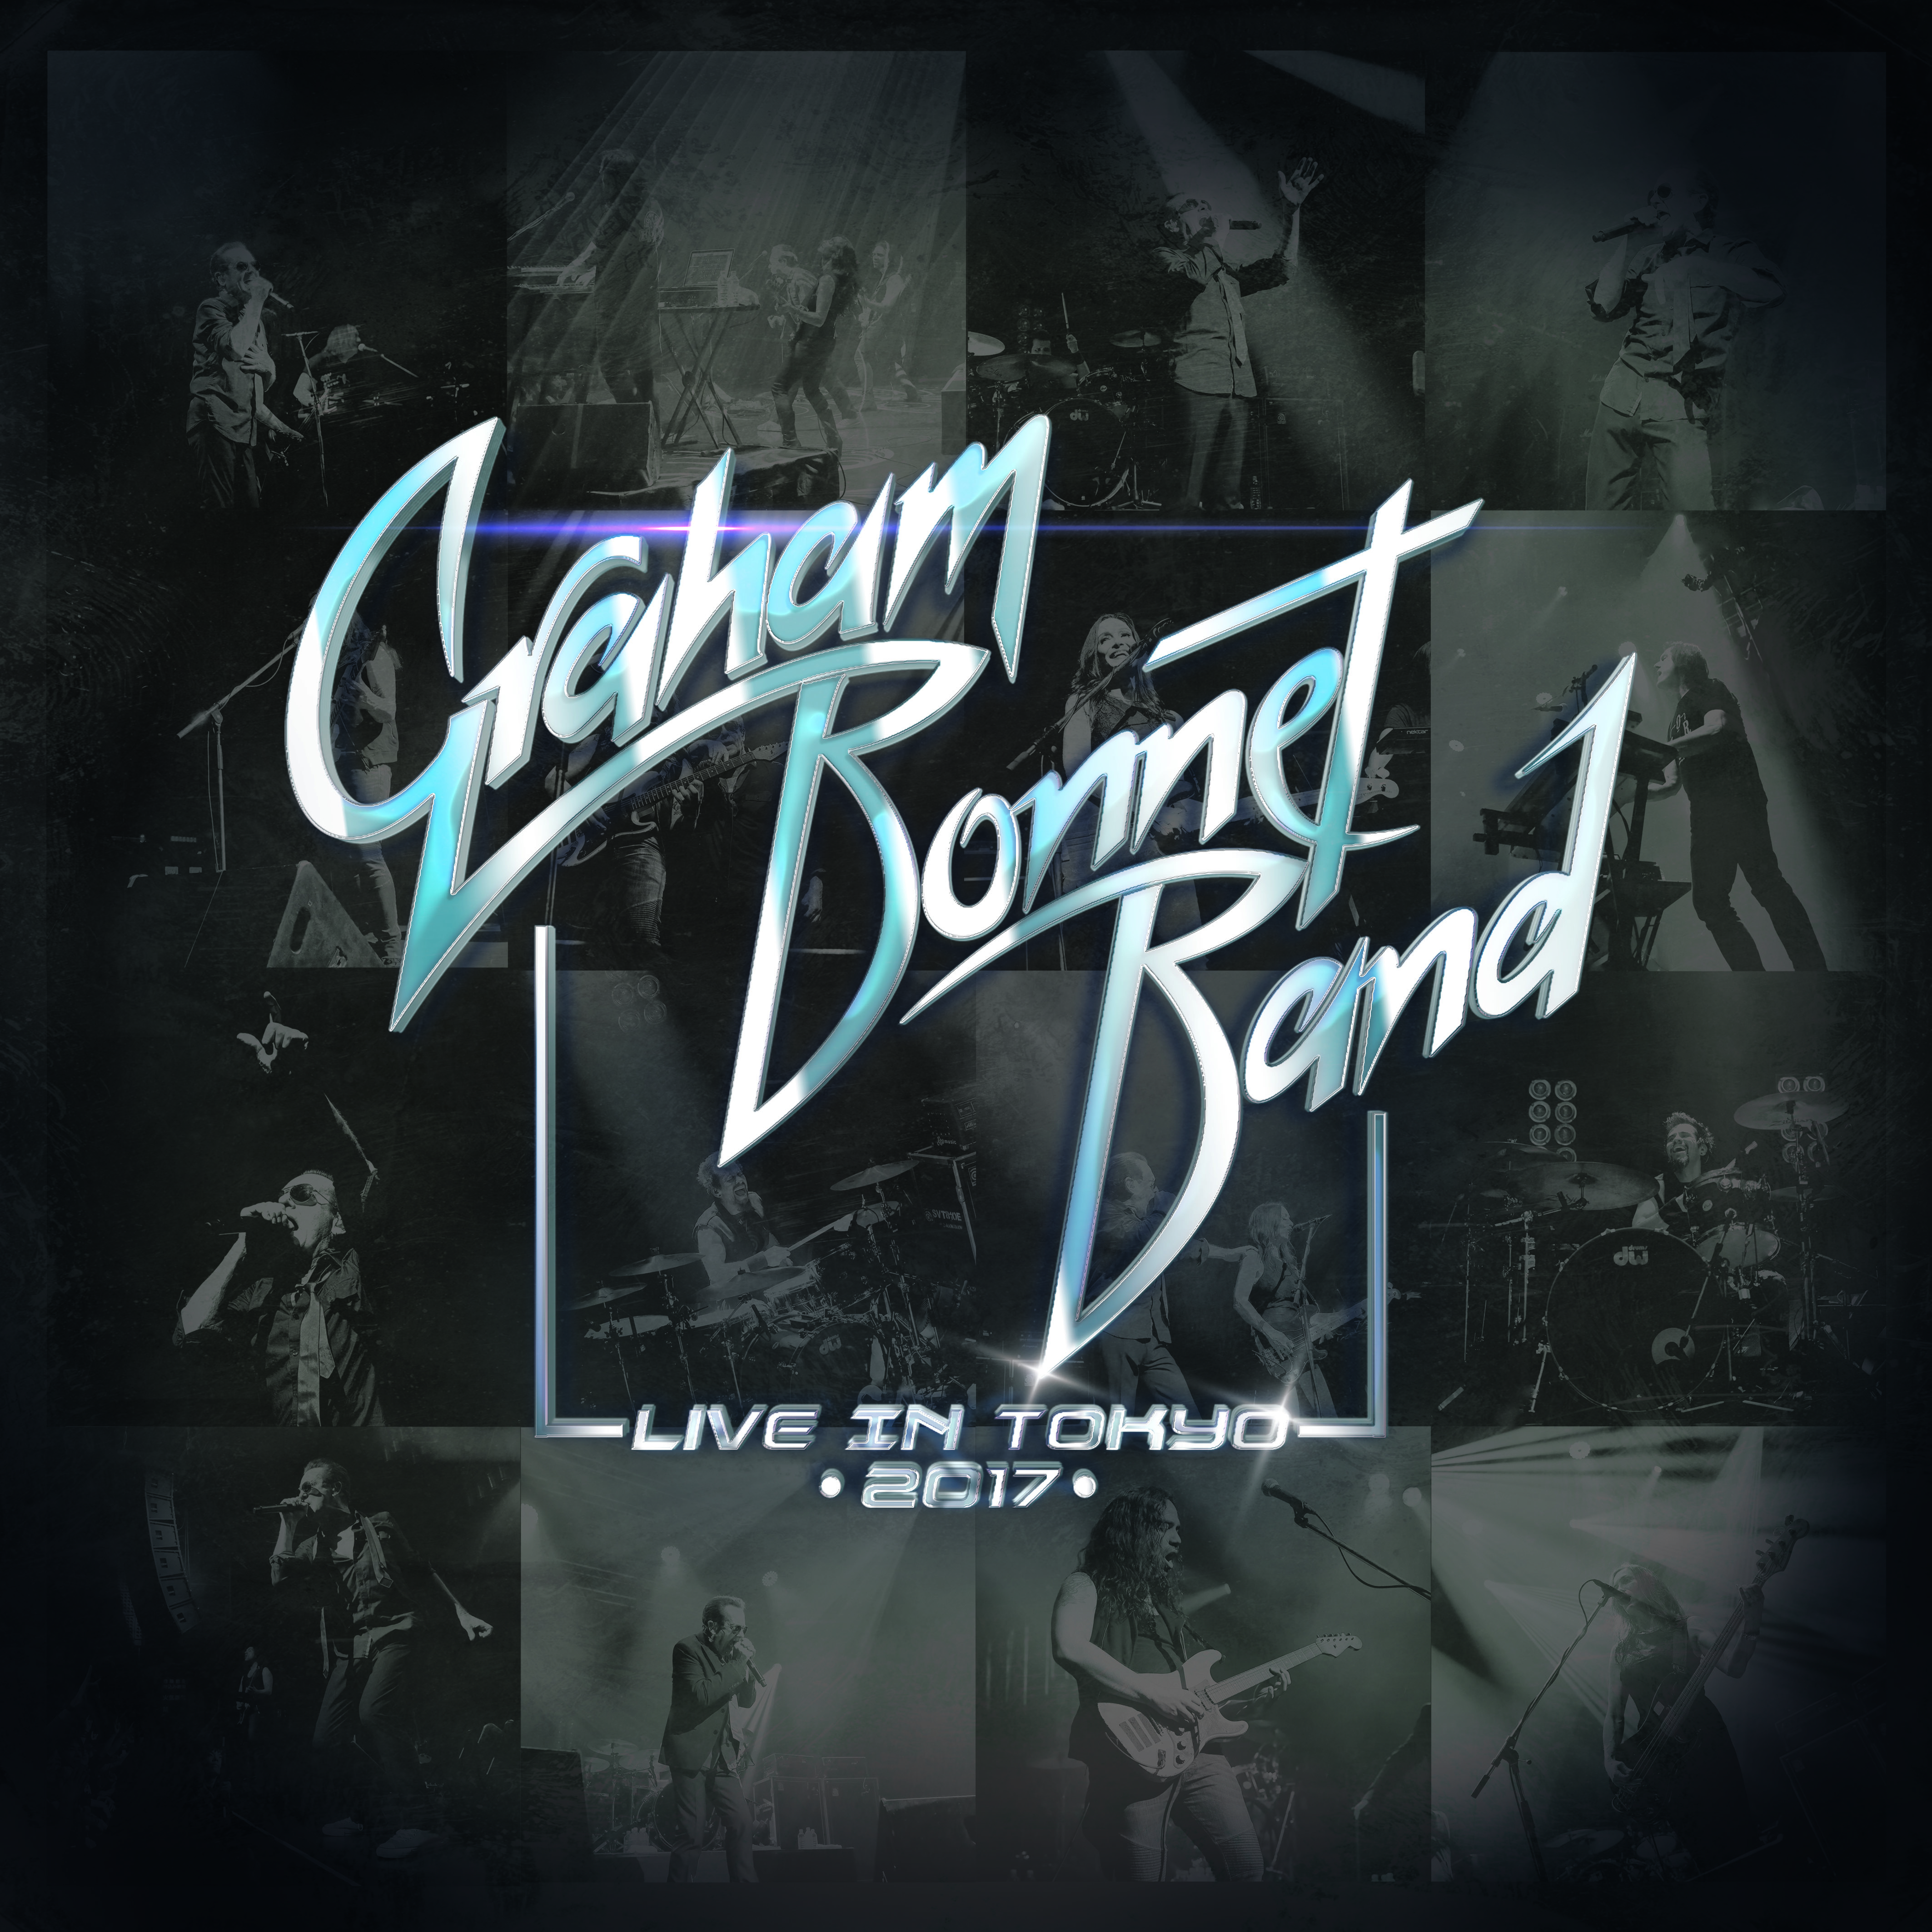 Graham Bonnet Band - “Live in Tokyo 2017”